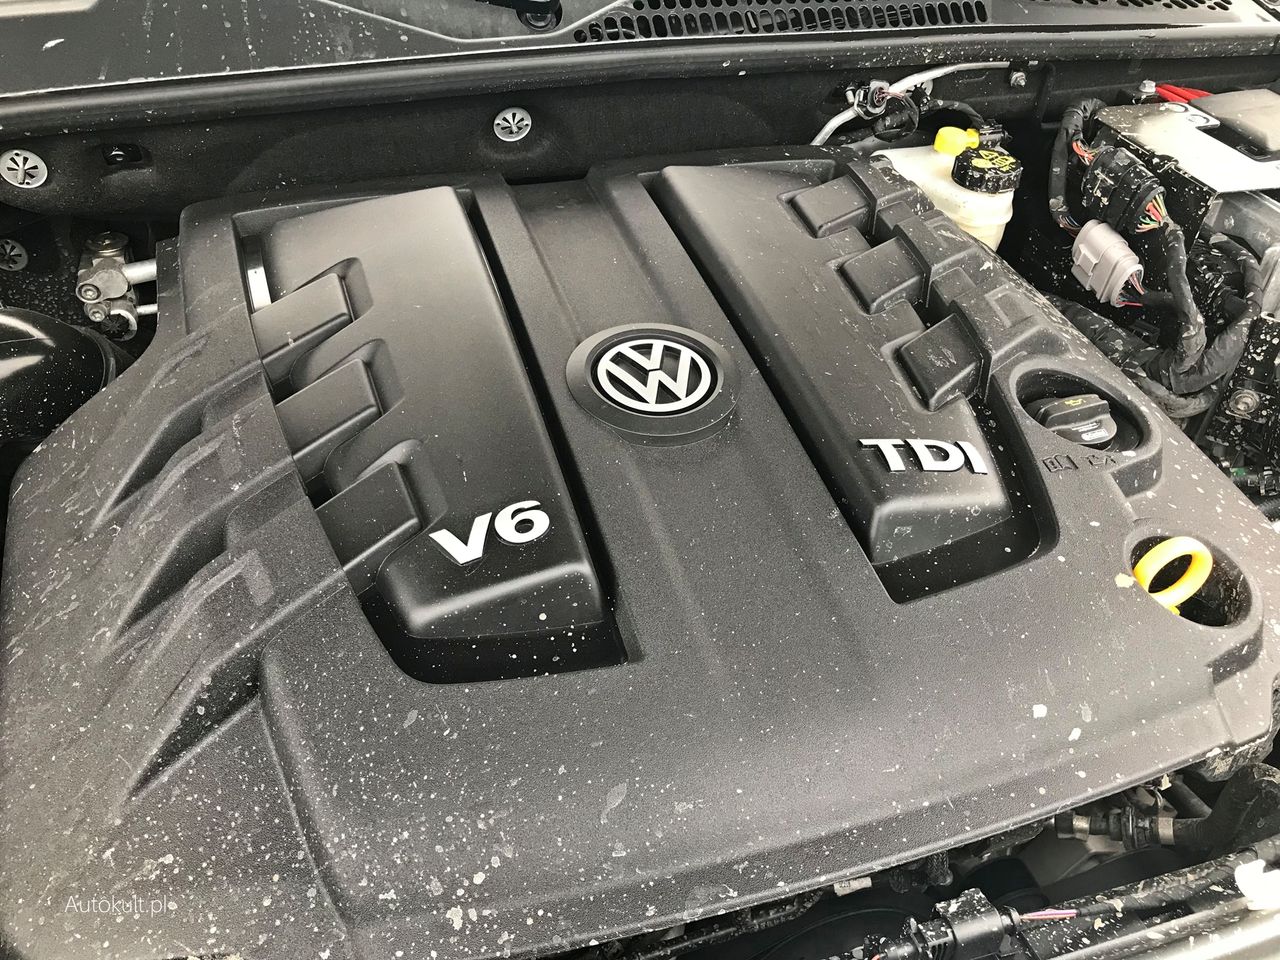 VW Amarok V6 Aventura